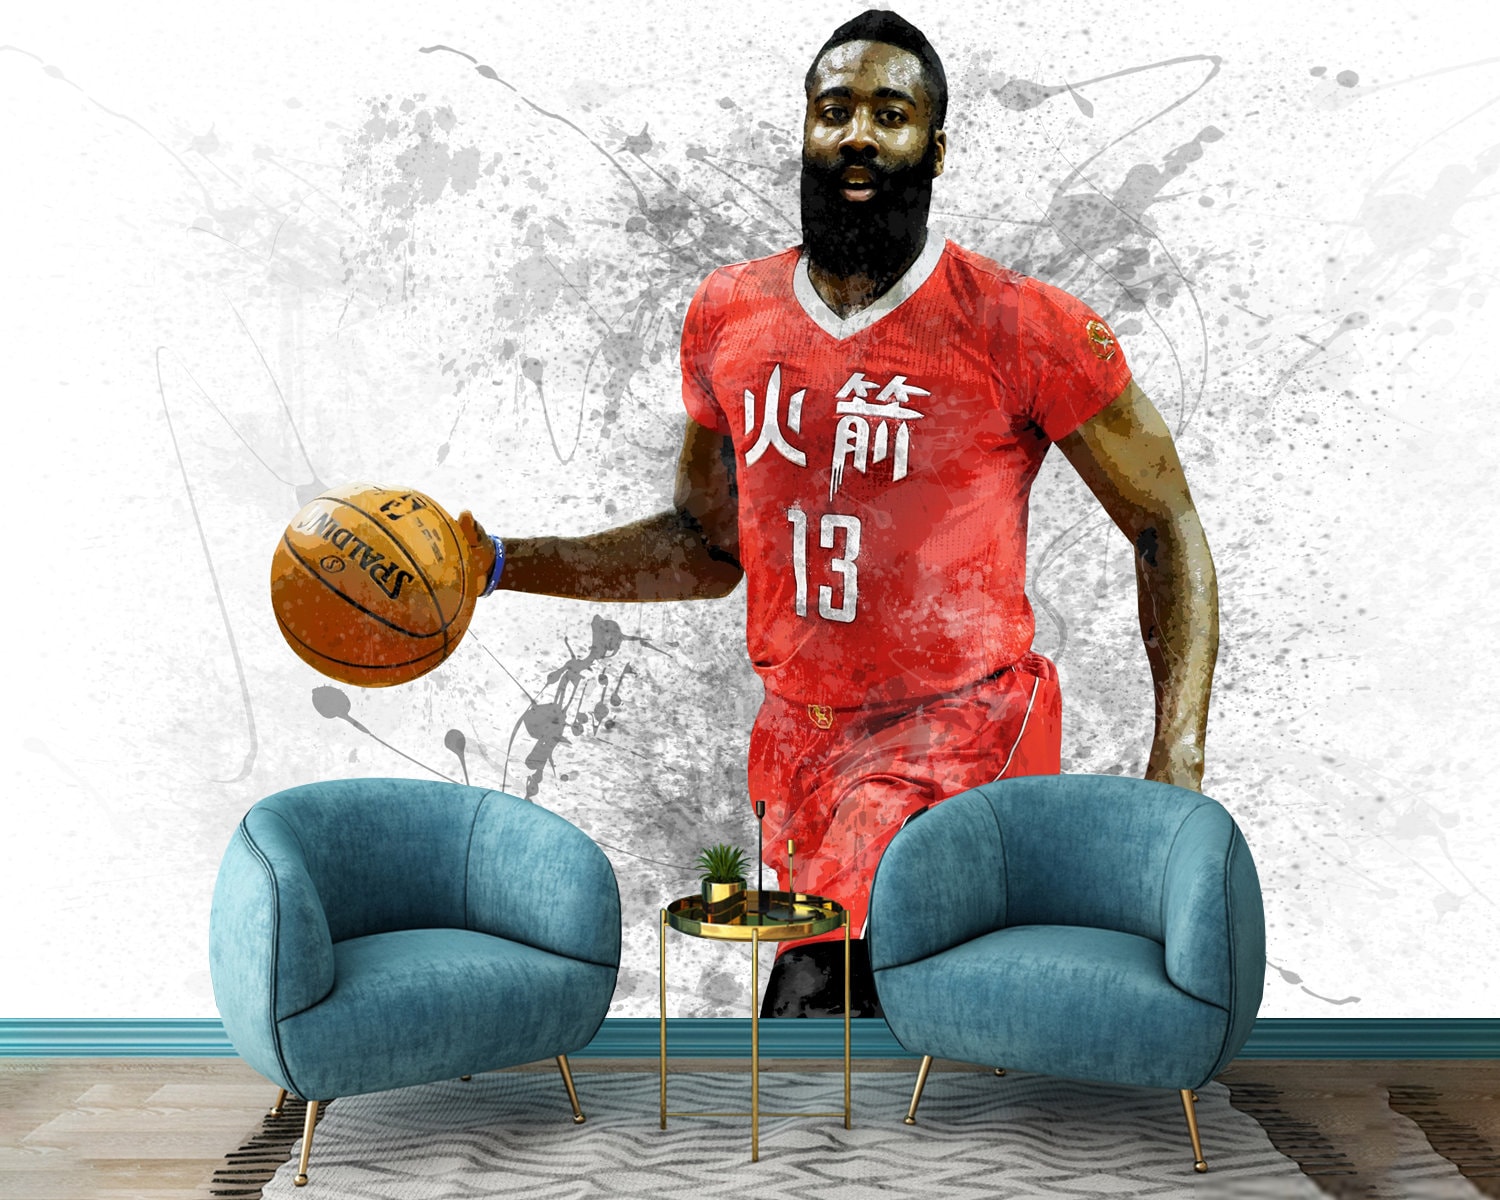 James Harden wallpaper  Nba art, Nba basketball art, Nba players